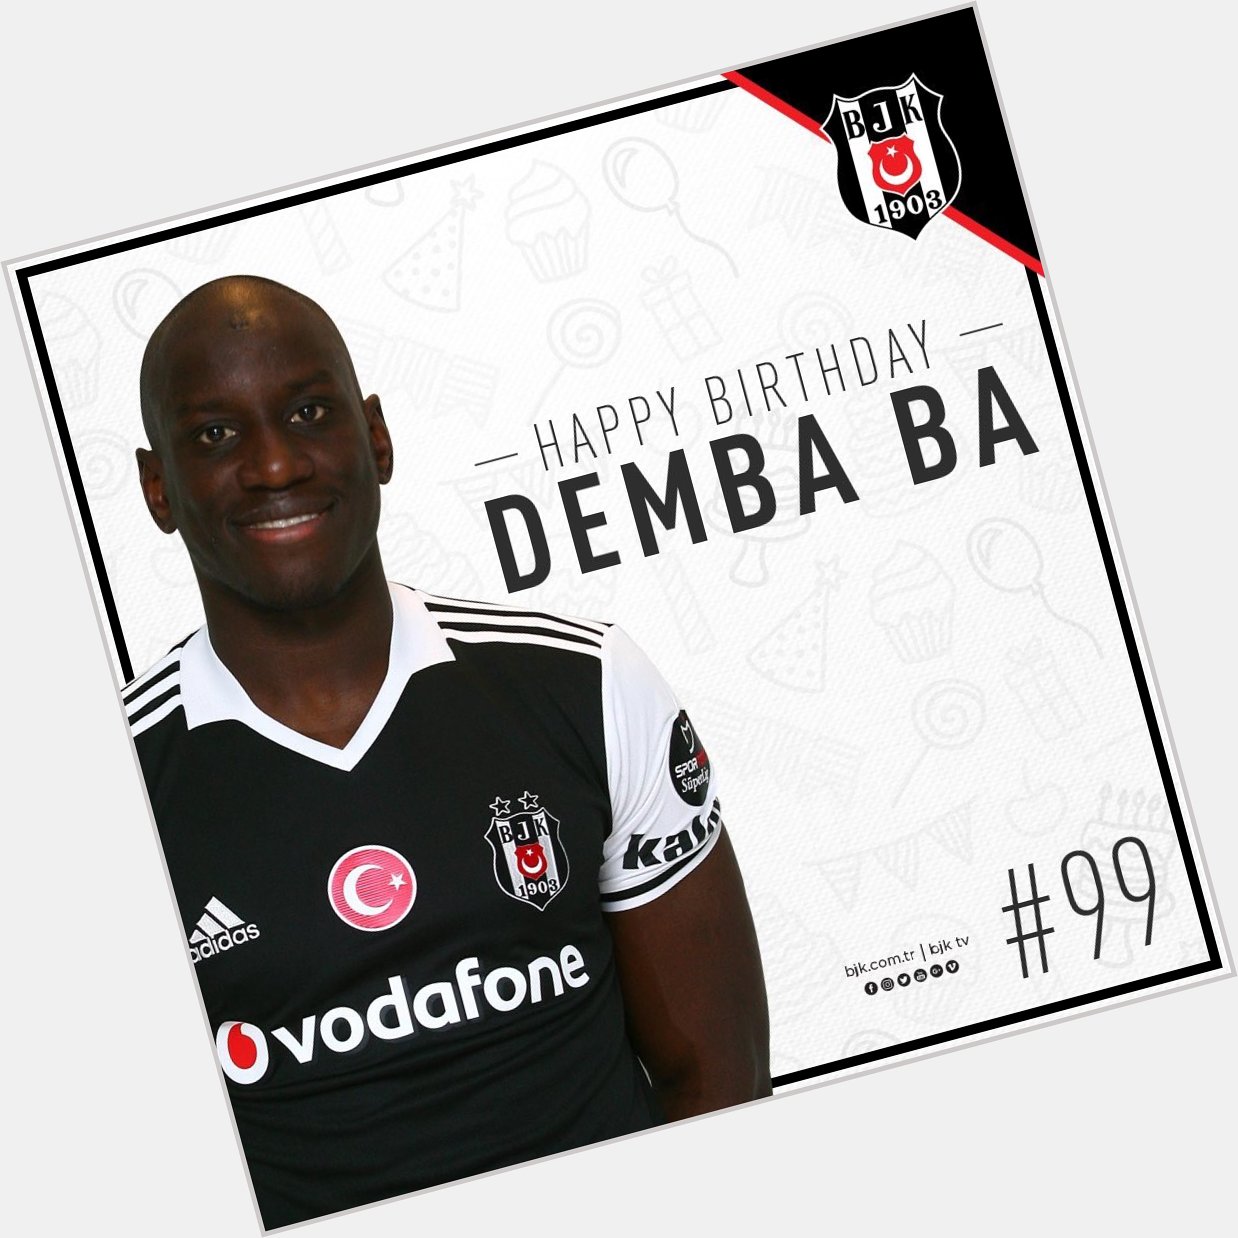  yi ki do dun Nice mutlu y llara
Happy Birthday Demba Ba      